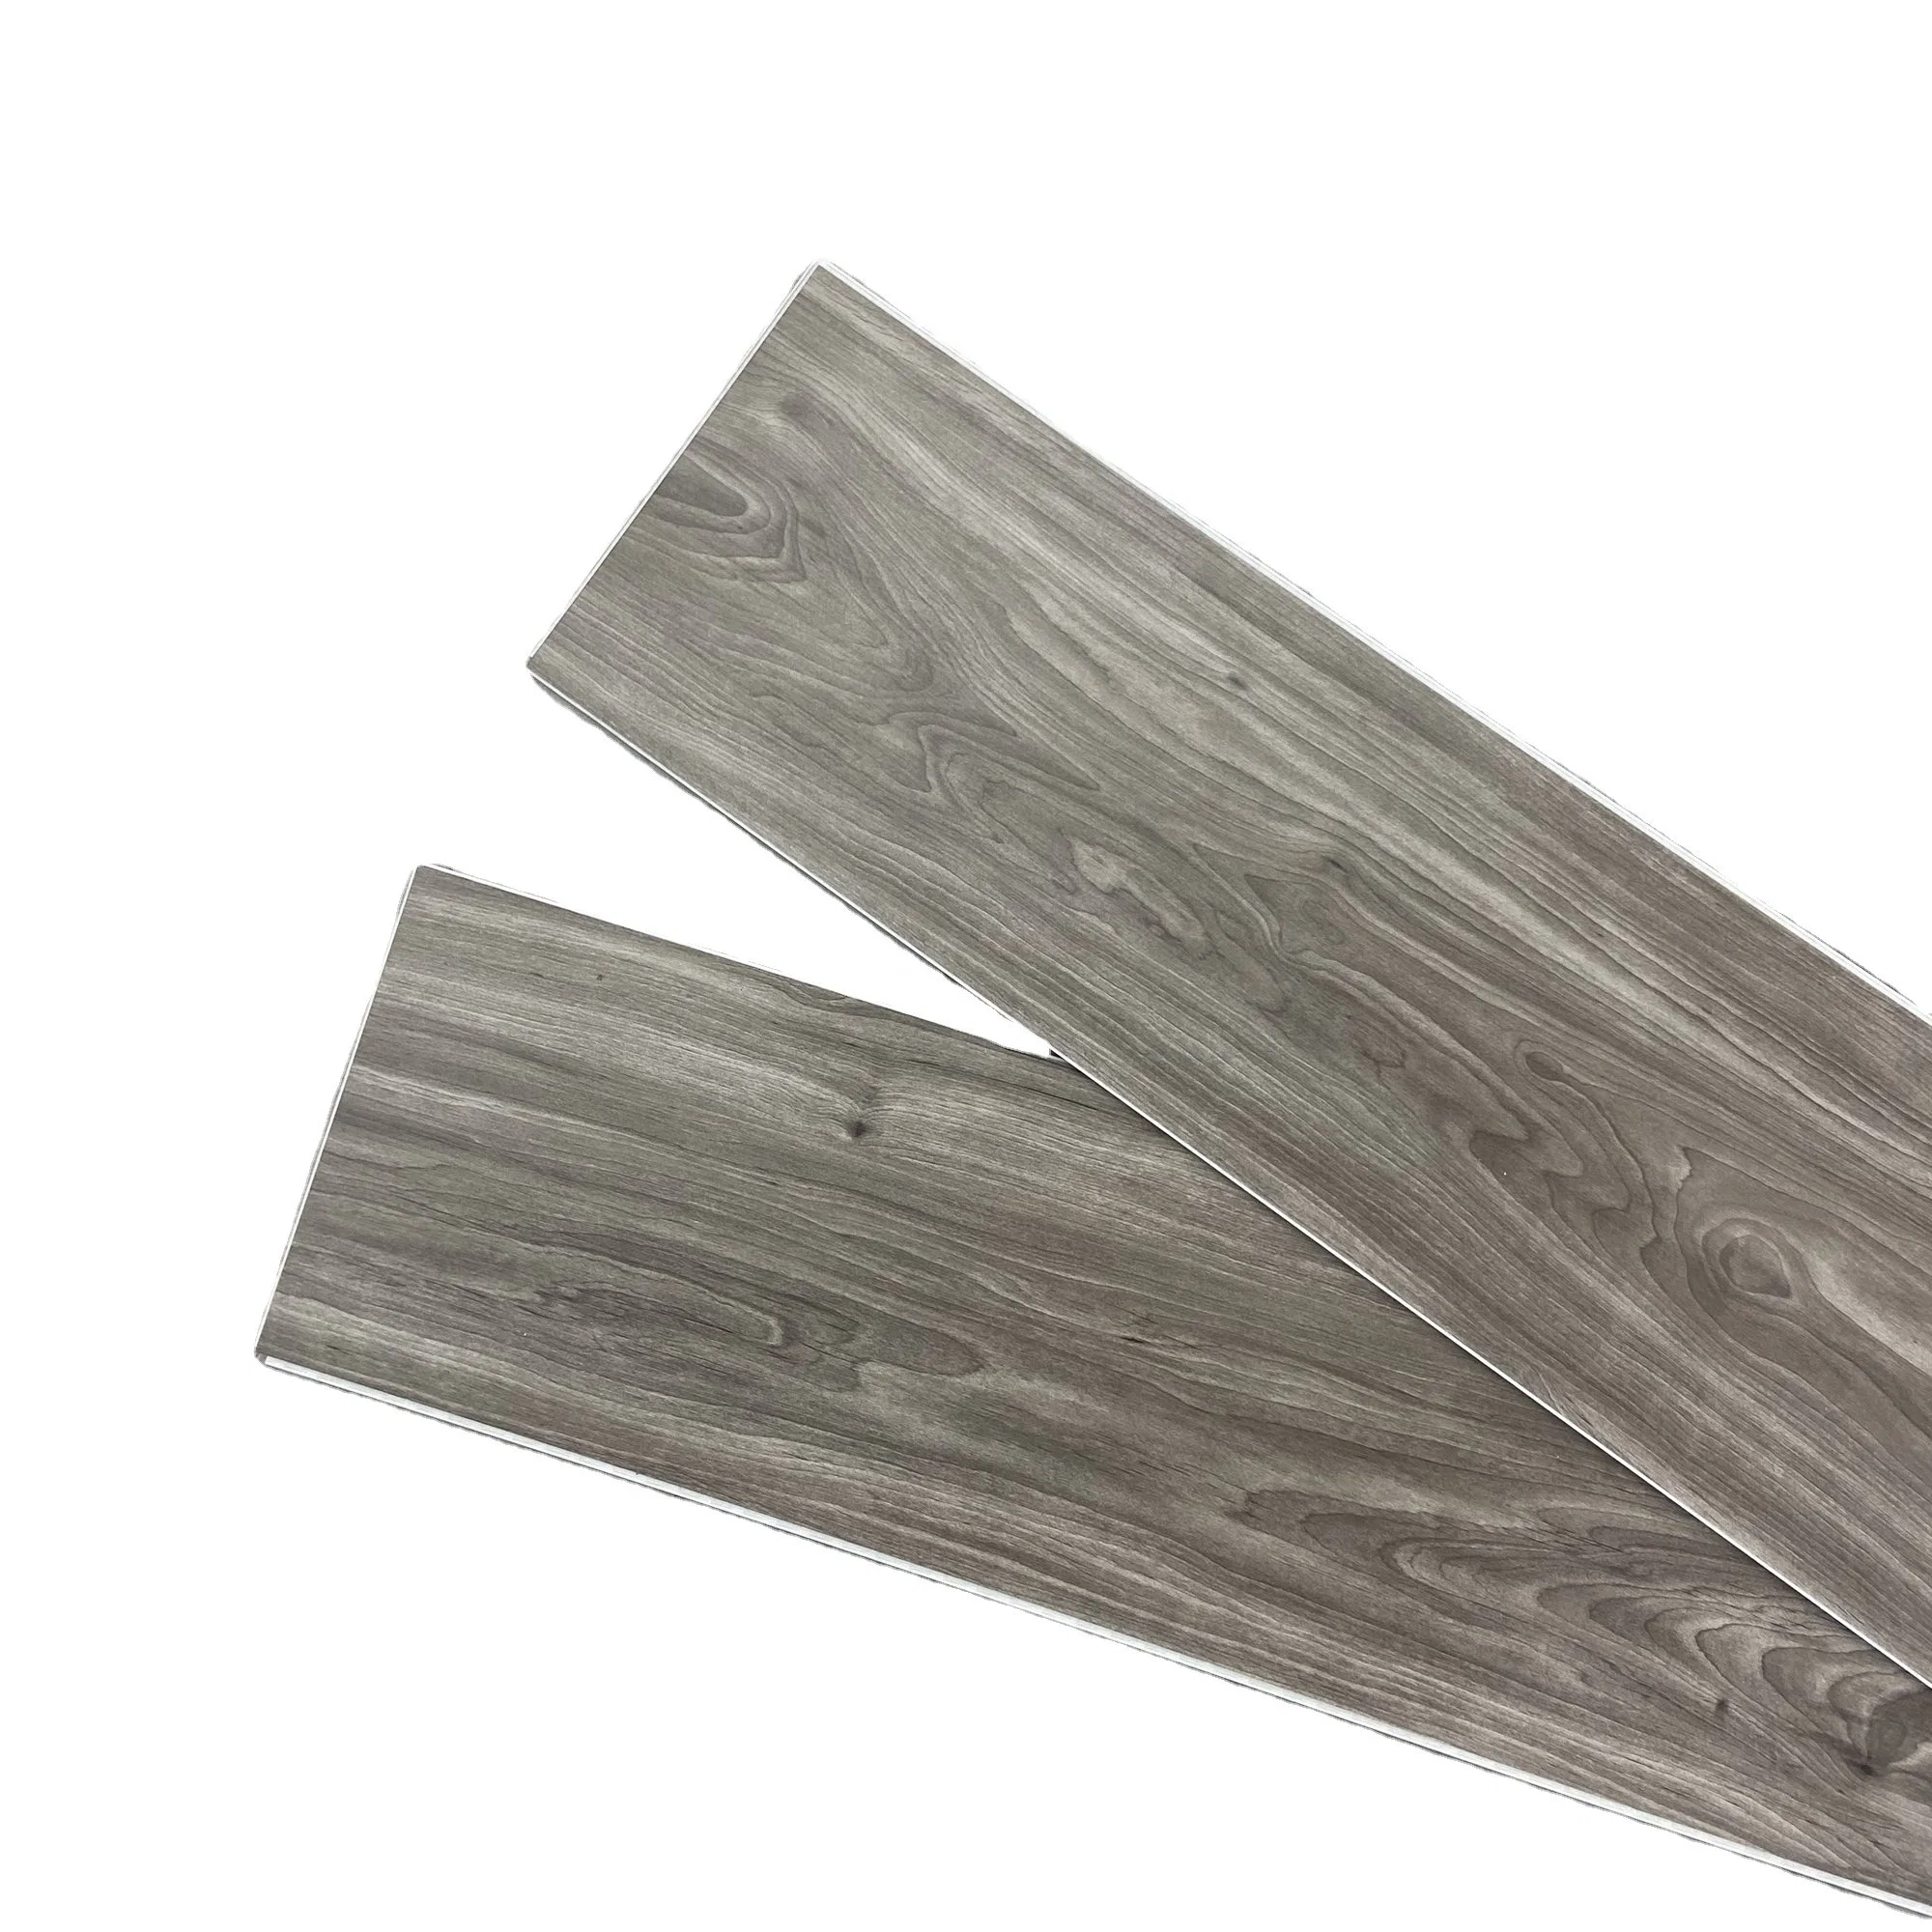 Pierre composite en plastique auto-adhésif en vinyle de planches de bois en plastique de style en PVC avec revêtement de sol plancher de la qualité des prix concurrentiels